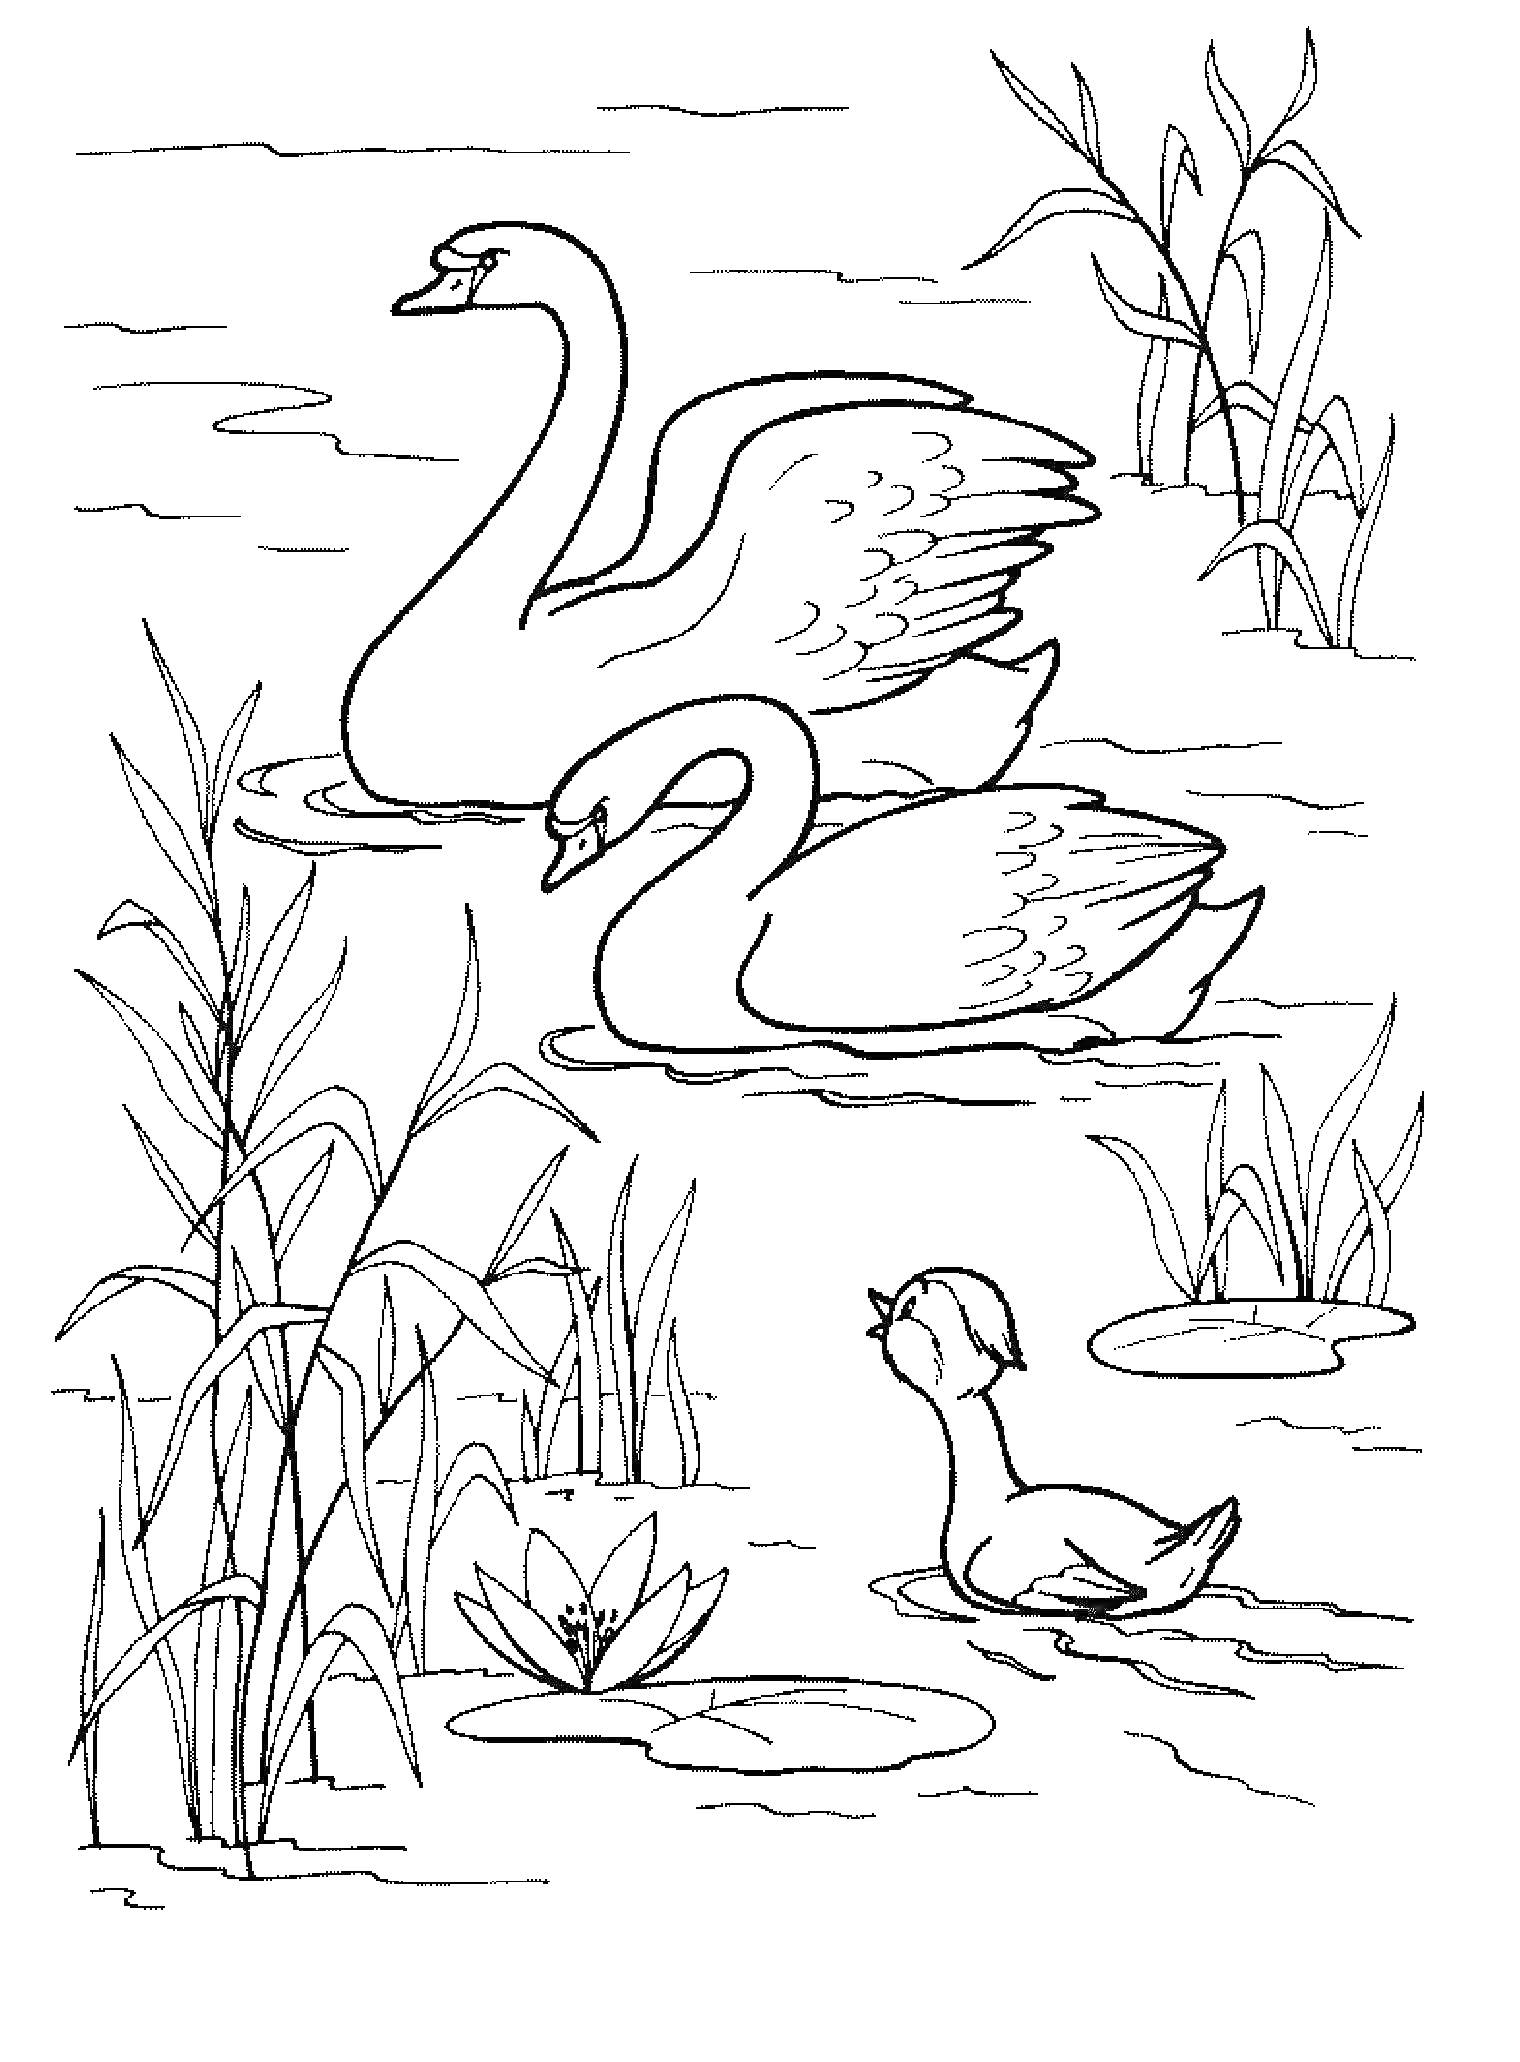 Два лебедя и один утёнок на пруду среди зарослей камыша и водных лилий